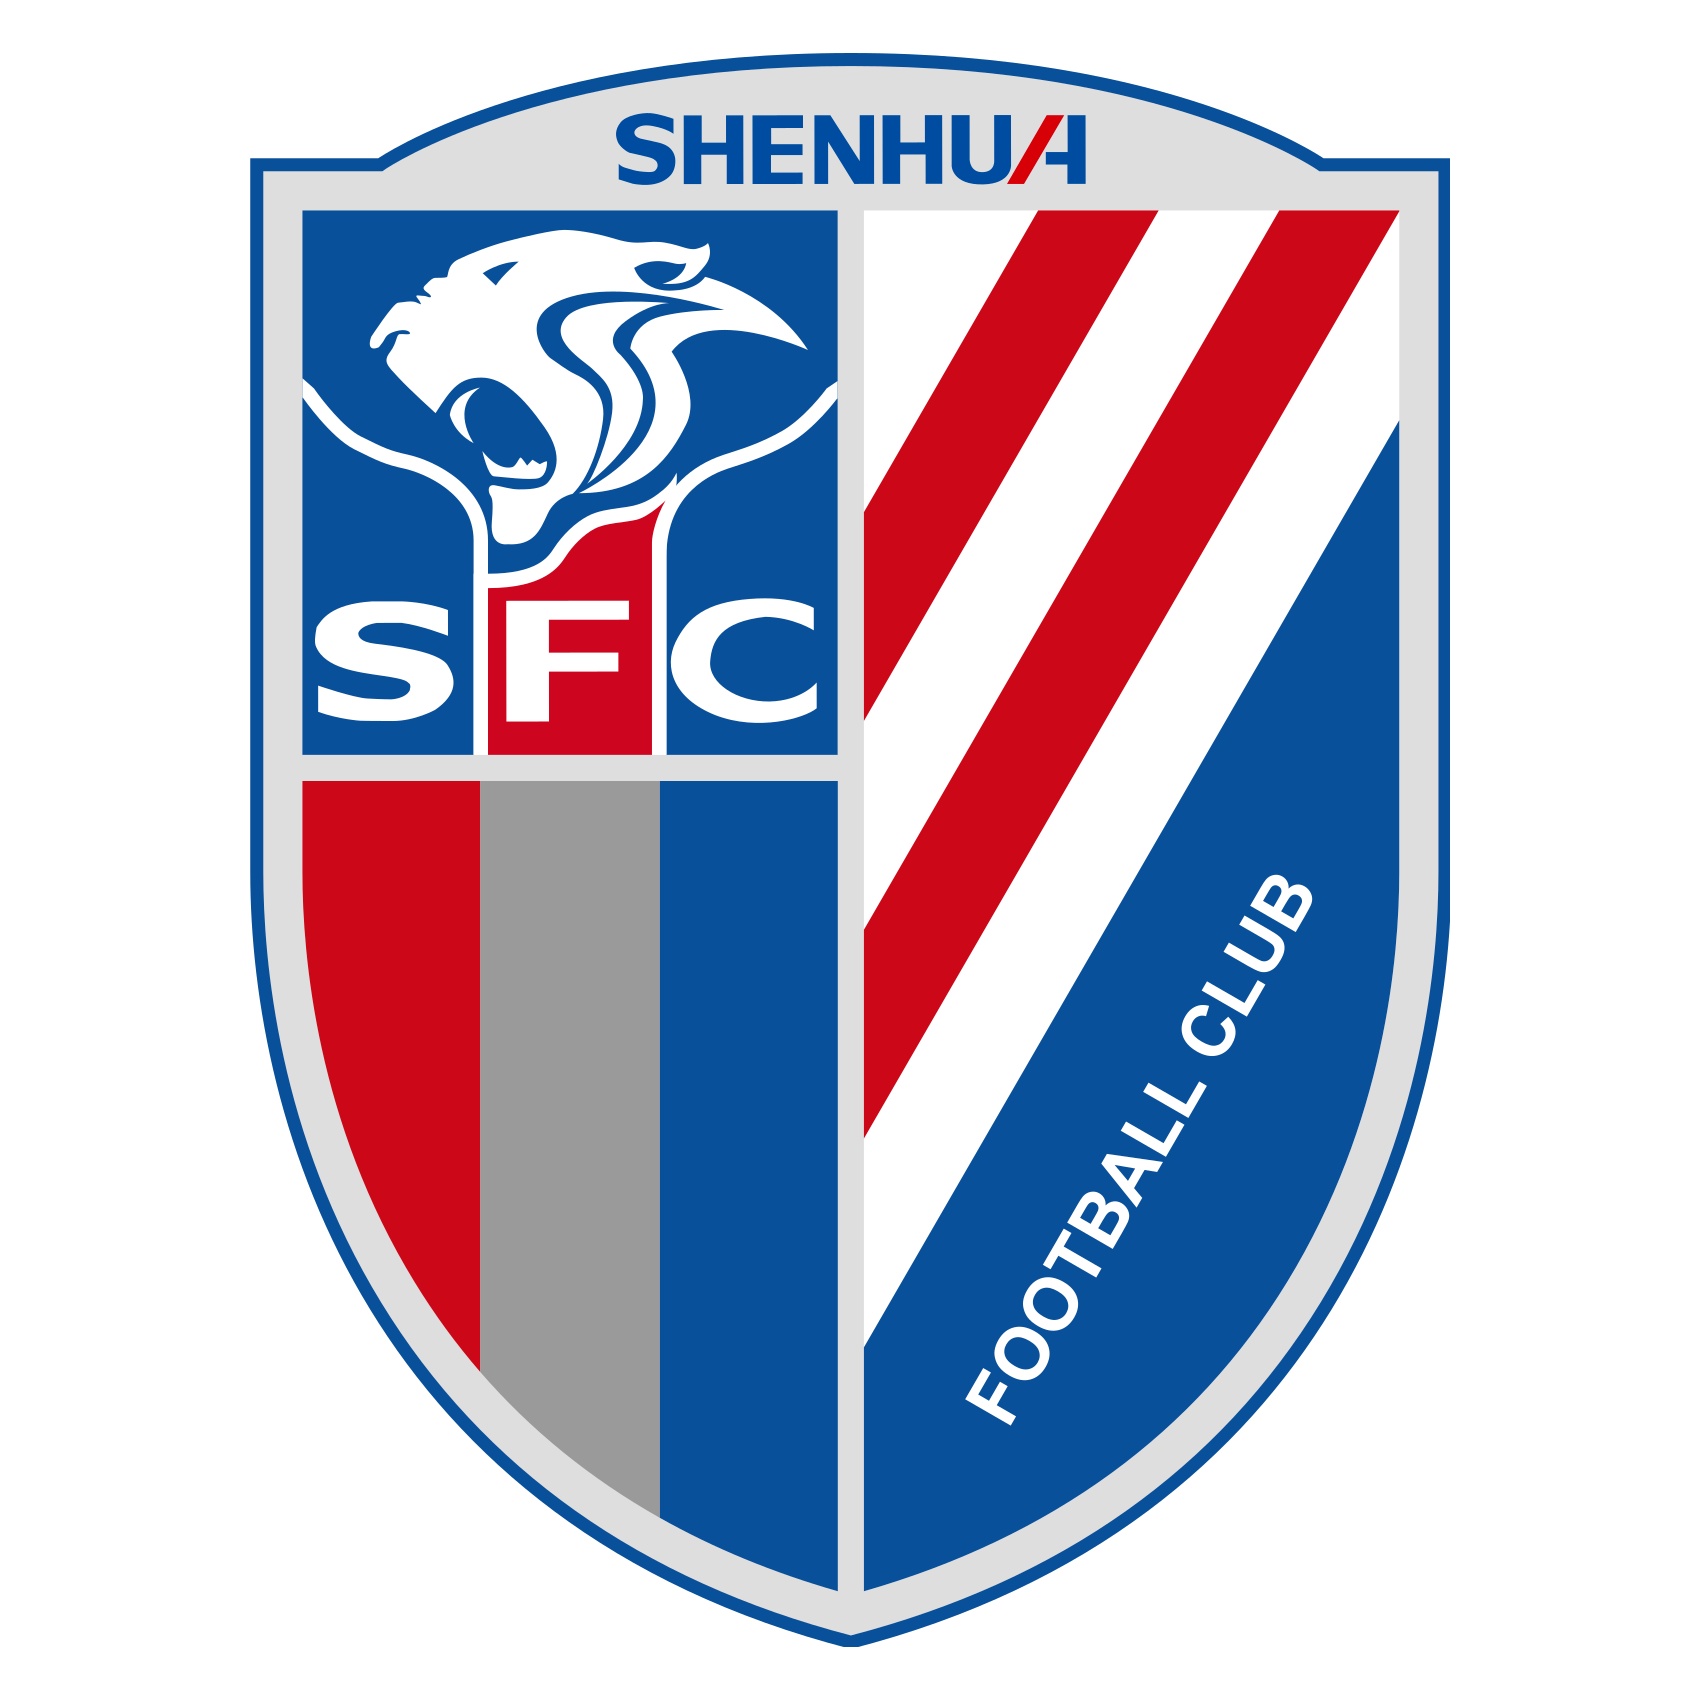 Shanghai Shenhua Sub 19